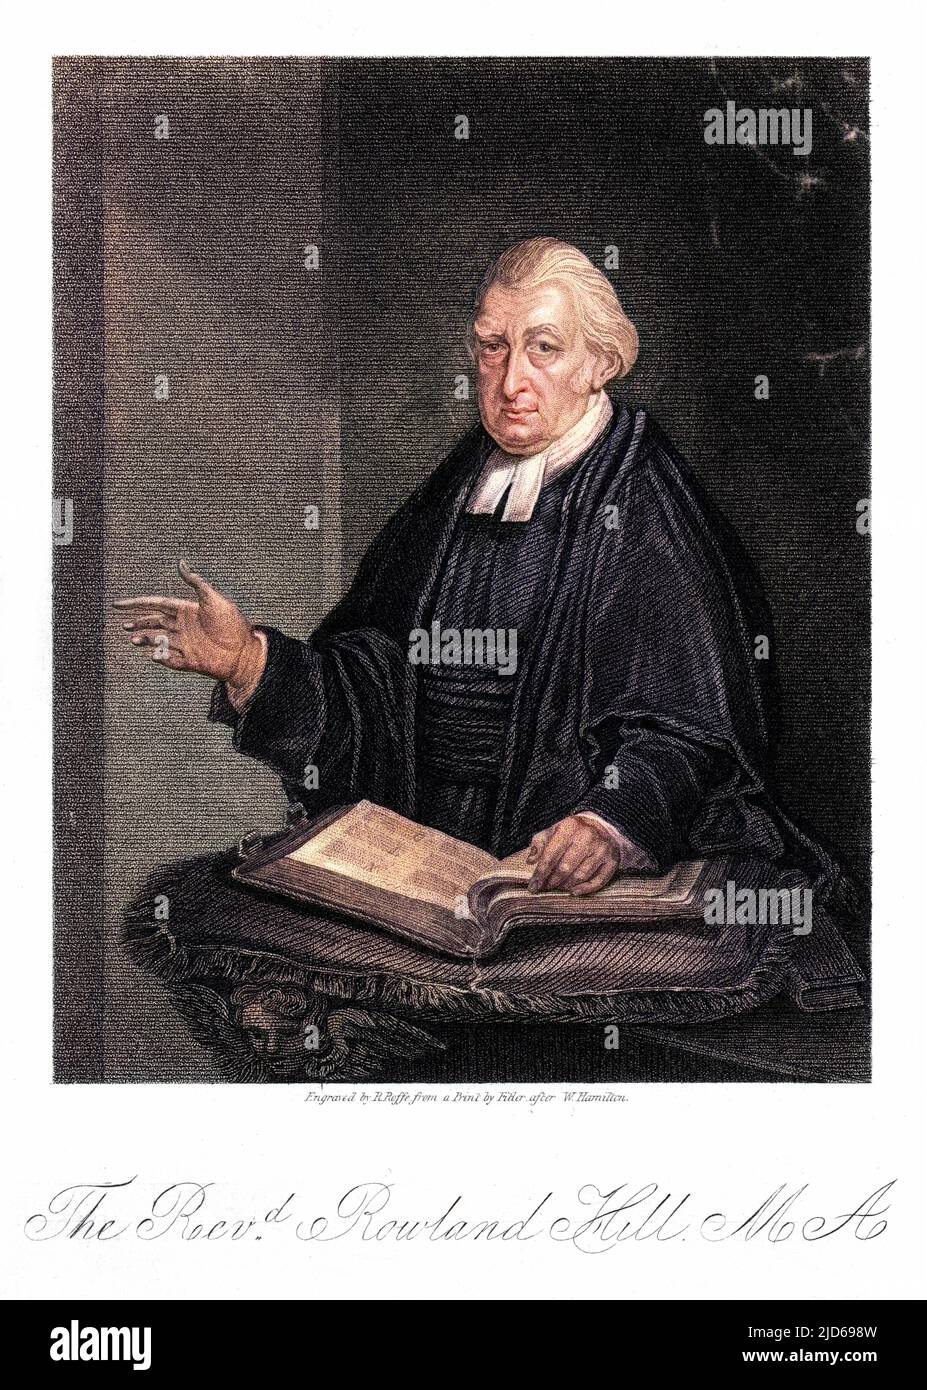 Der beliebte Prediger ROWLAND HILL, Minister der Surrey Chapel, London. Kolorierte Version von : 10160867 Datum: 1744-1833 Stockfoto